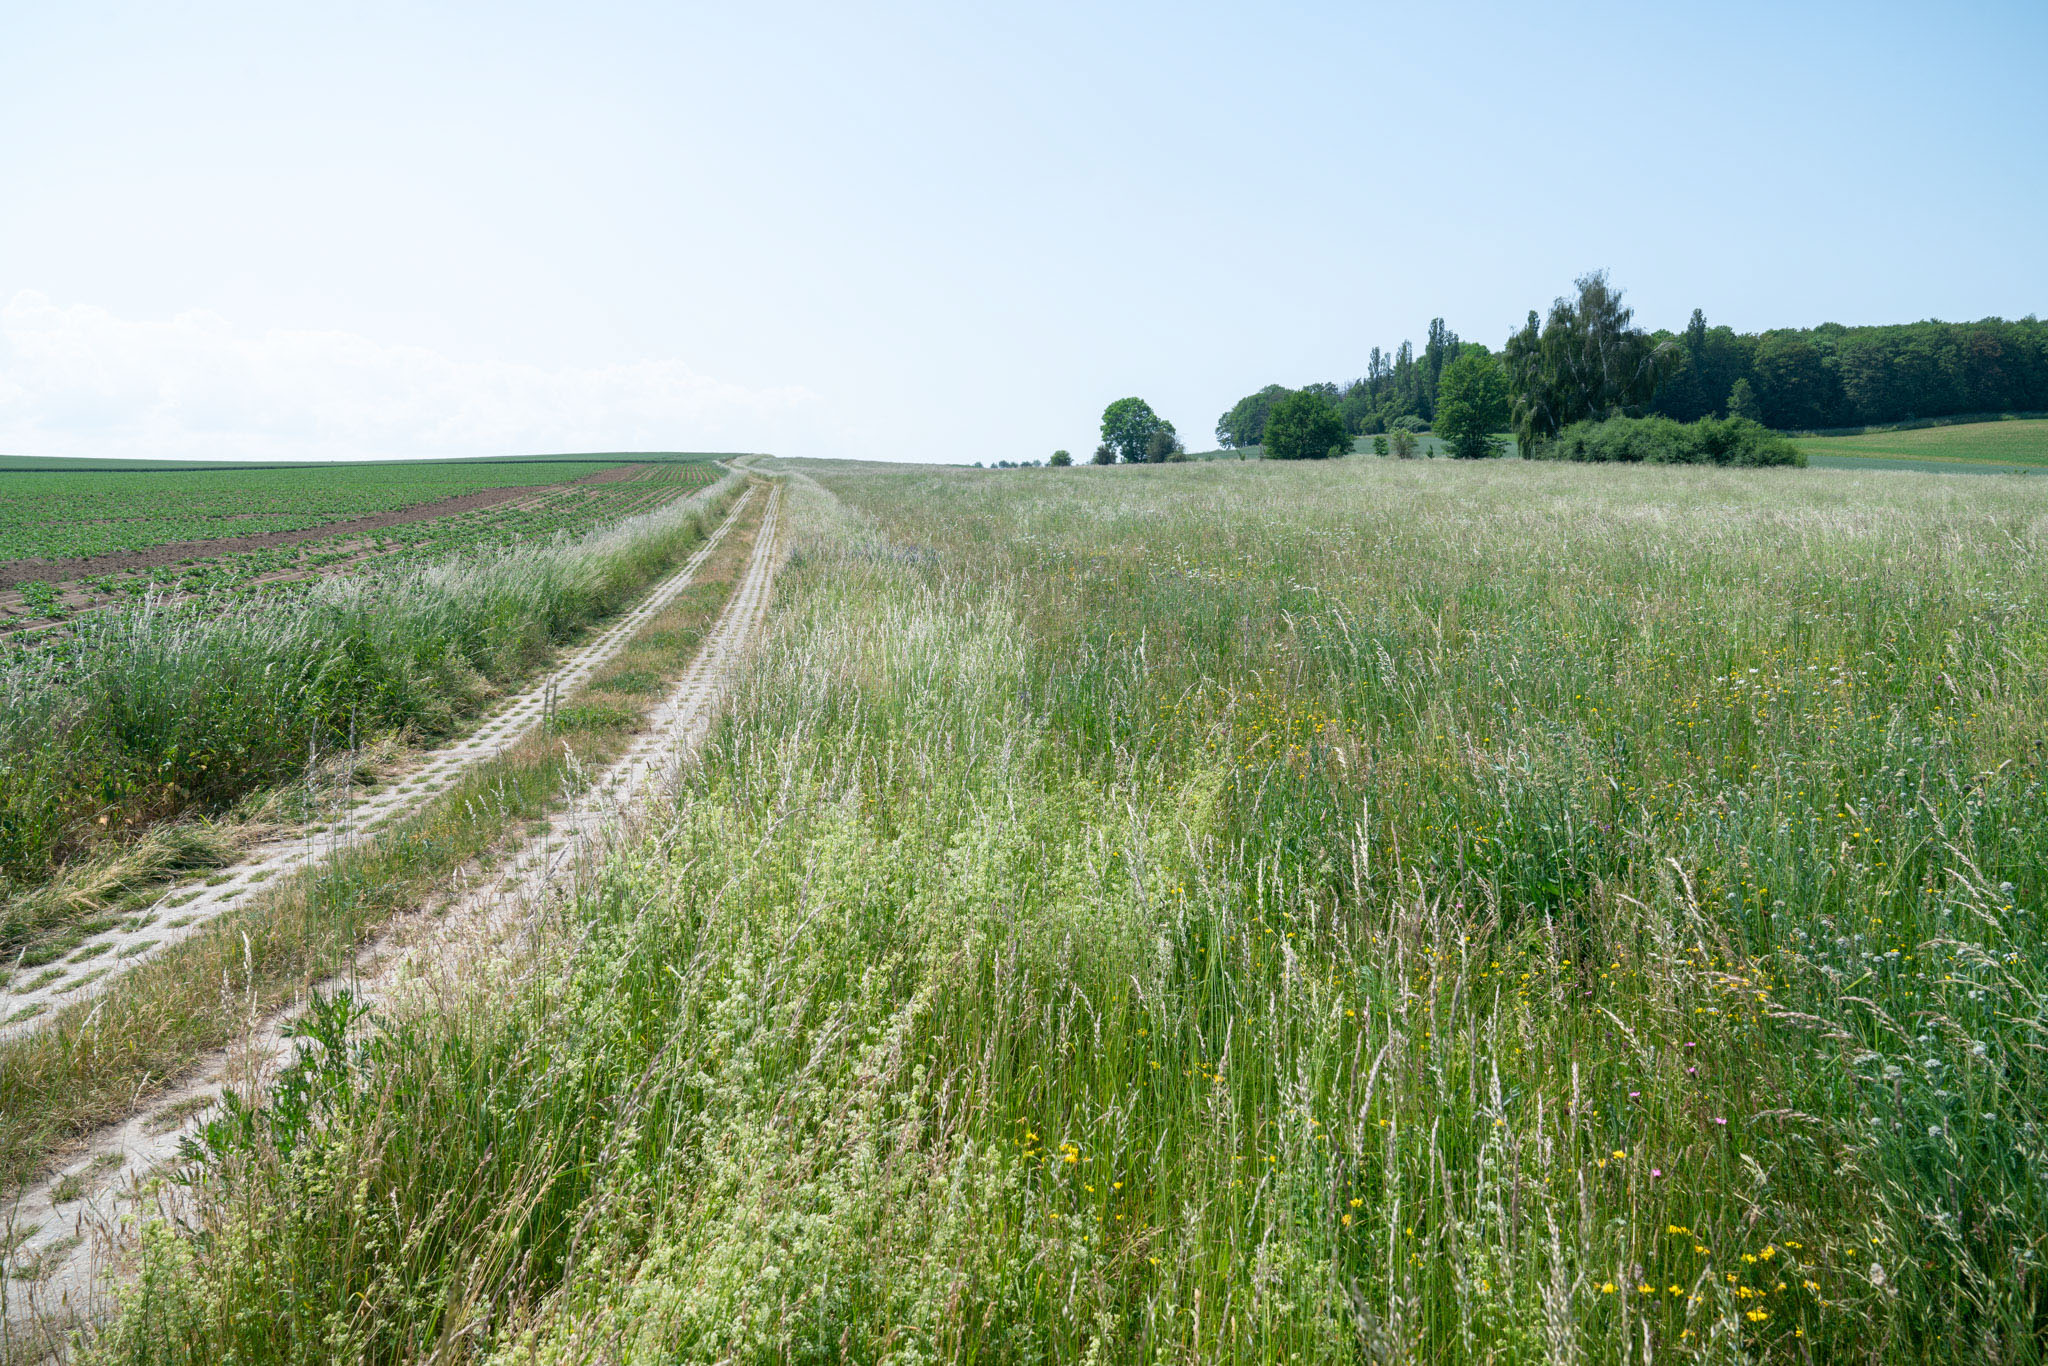 Im rechten Bildteil ist die Blühwiese mit verschiedenen Gräsern und Blüten zu sehen. Links läuft der ehemalige Kolonnenweg bis zum Horizont.